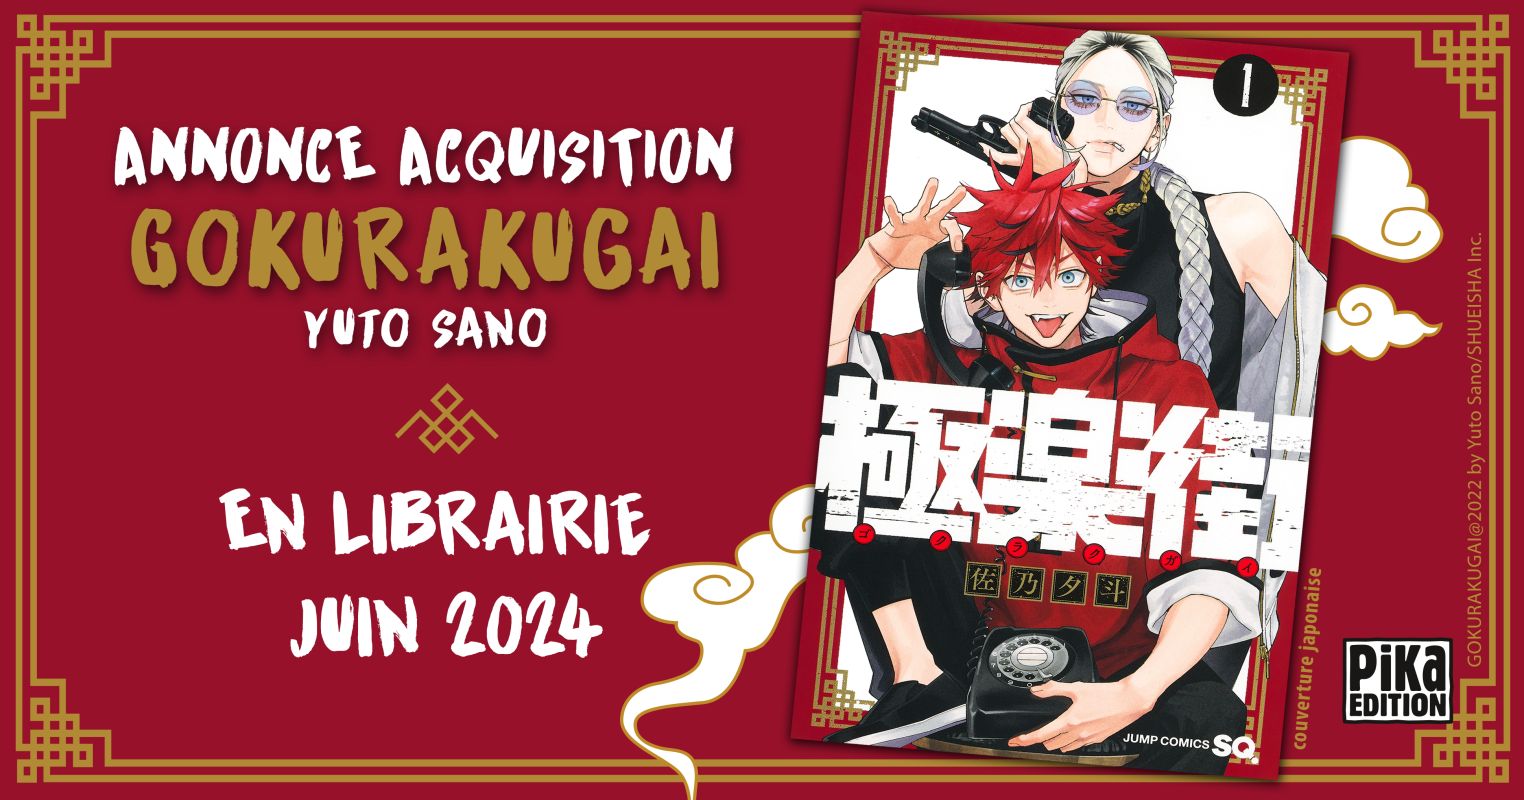 Le manga Gokurakugai annoncé par Pika Édition